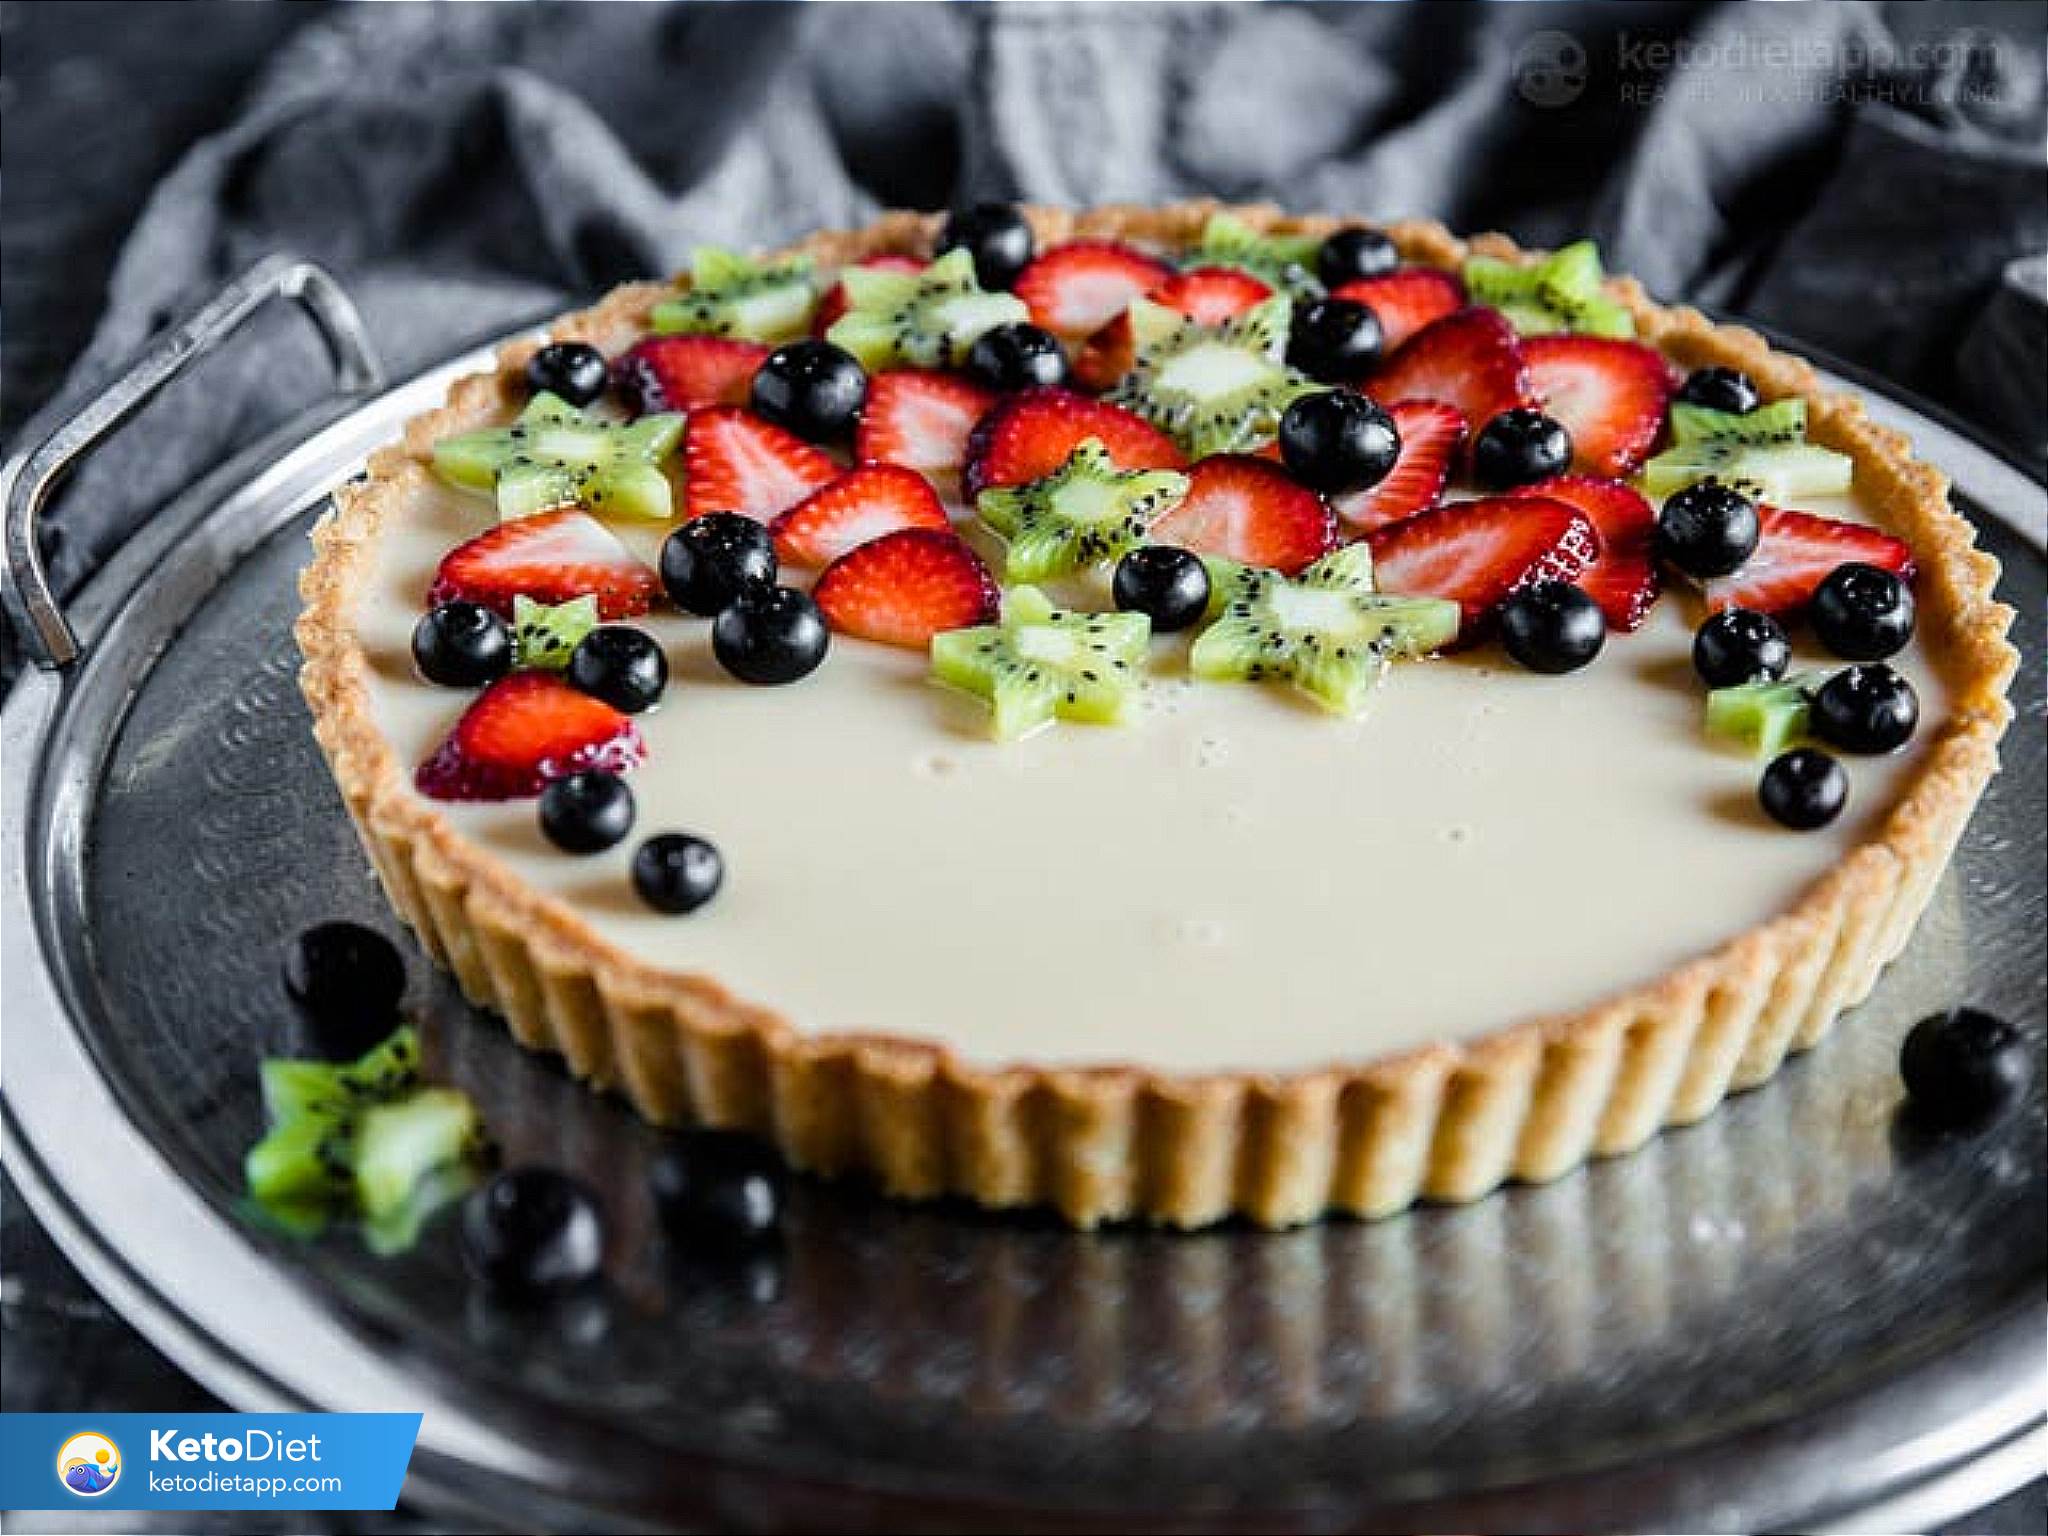 Low-Carb Fruit Flan Pie | KetoDiet Blog